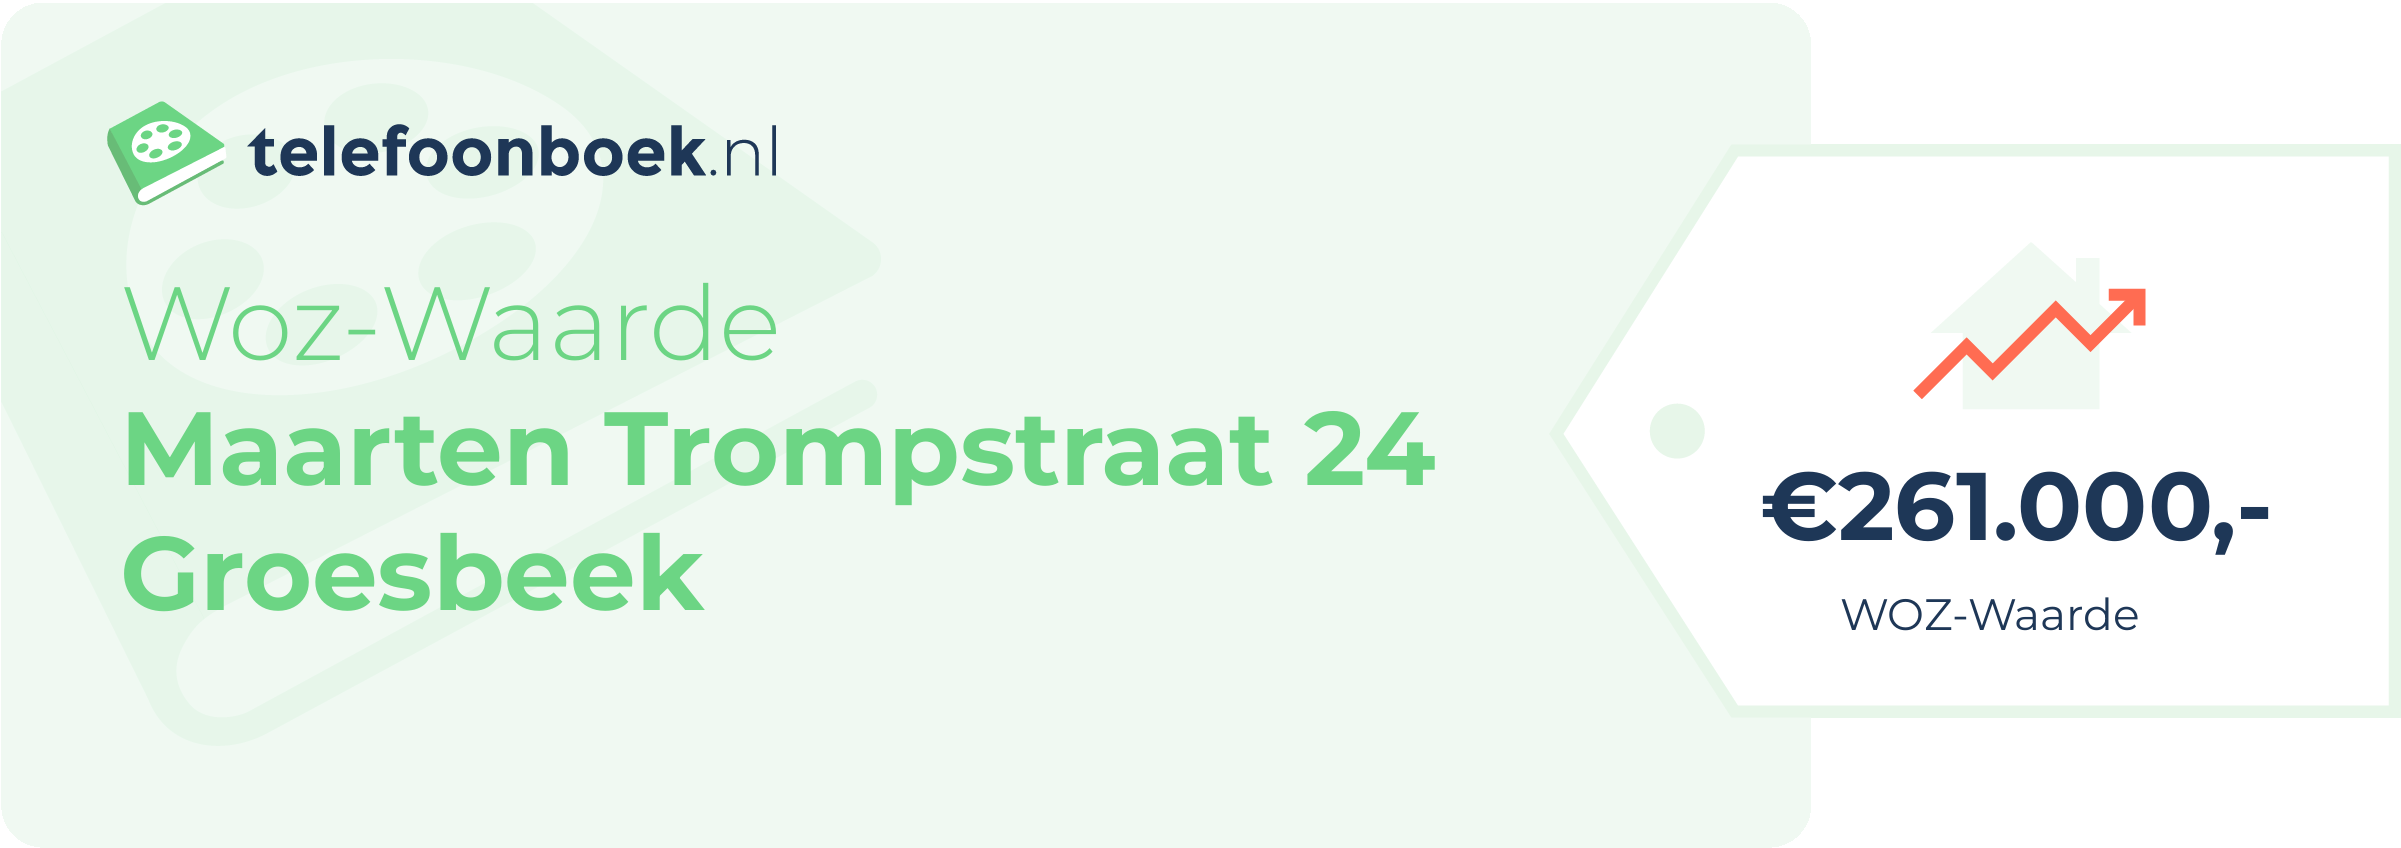 WOZ-waarde Maarten Trompstraat 24 Groesbeek